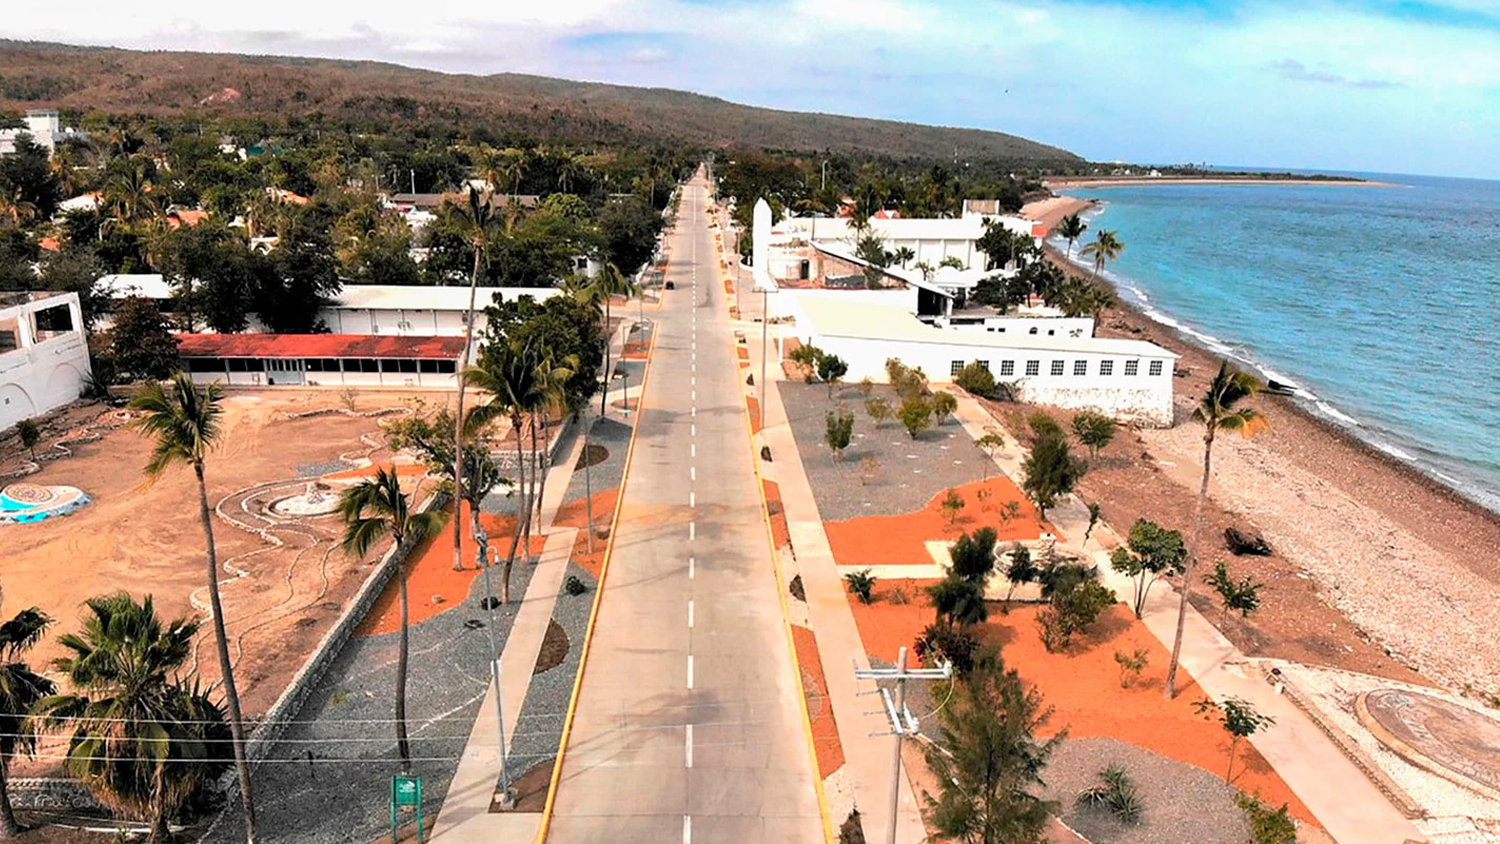 La colonia penitenciaria de Islas Marías, fundada en 1905, fue clausurada en 2019. (Especial)